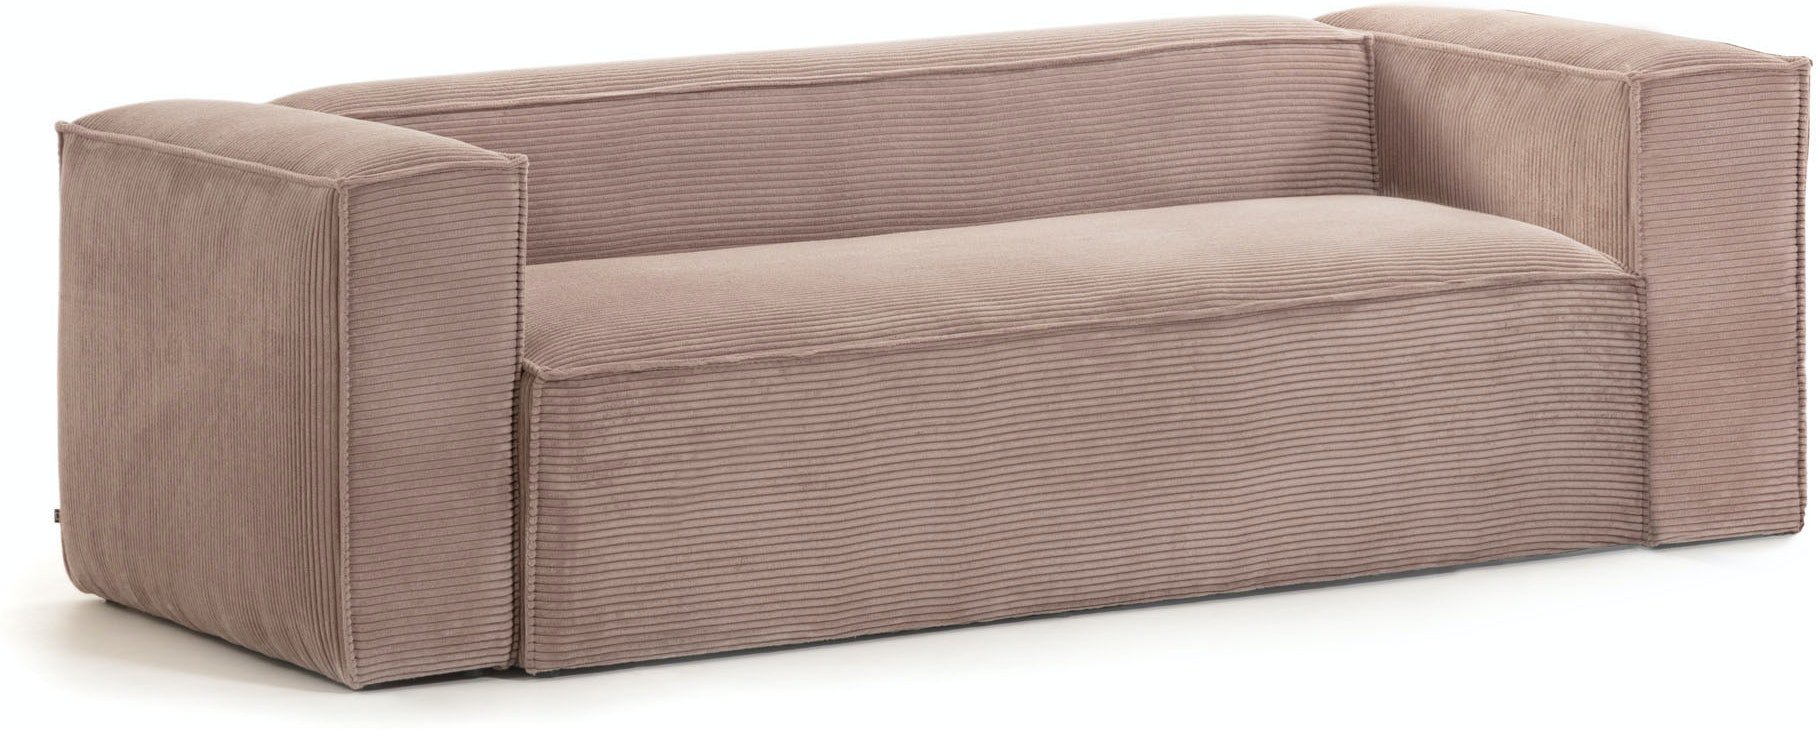 Blok, 3-personers sofa, Fjøjl by LaForma (H: 69 cm. B: 210 cm. L: 100 cm., Lyserød)